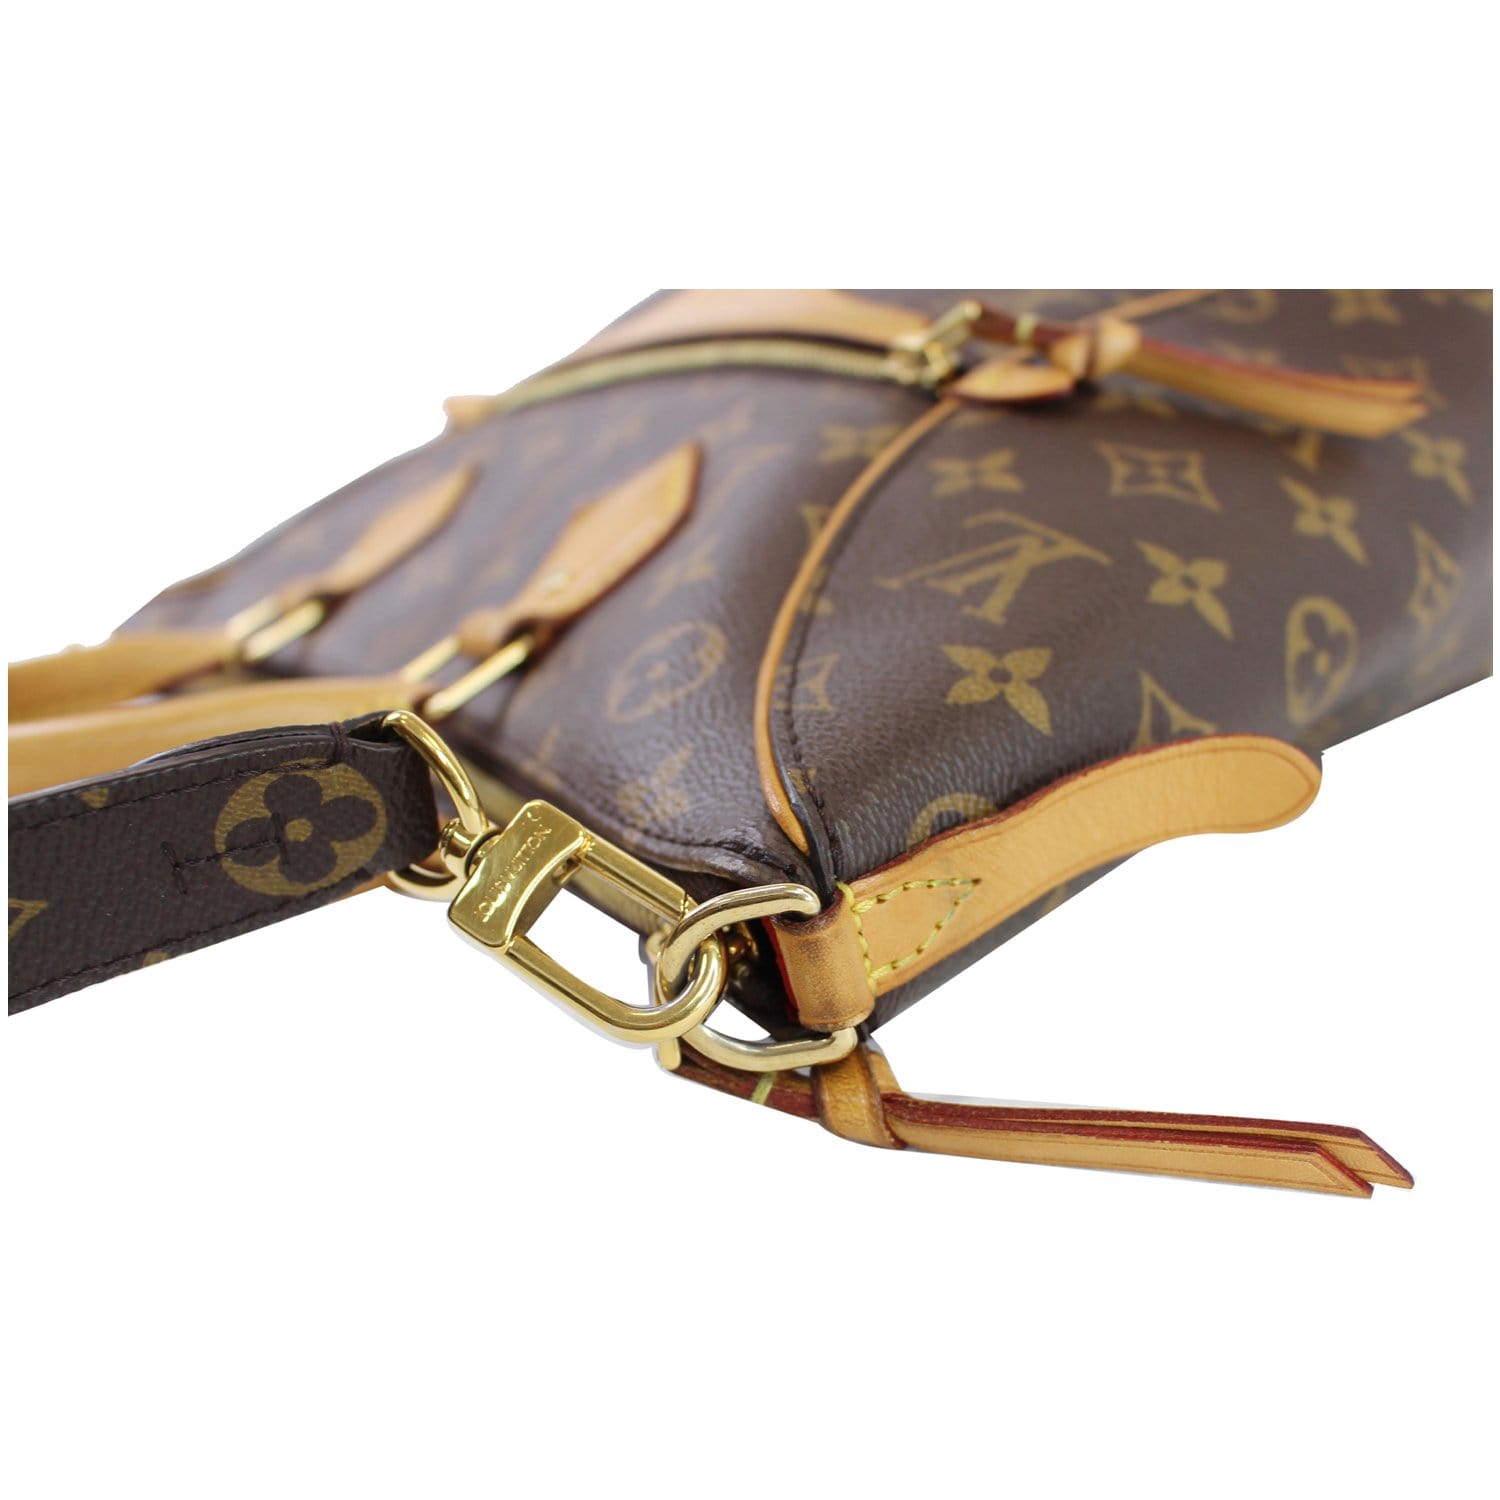 Tournelle Louis Vuitton Handbags for Women - Vestiaire Collective